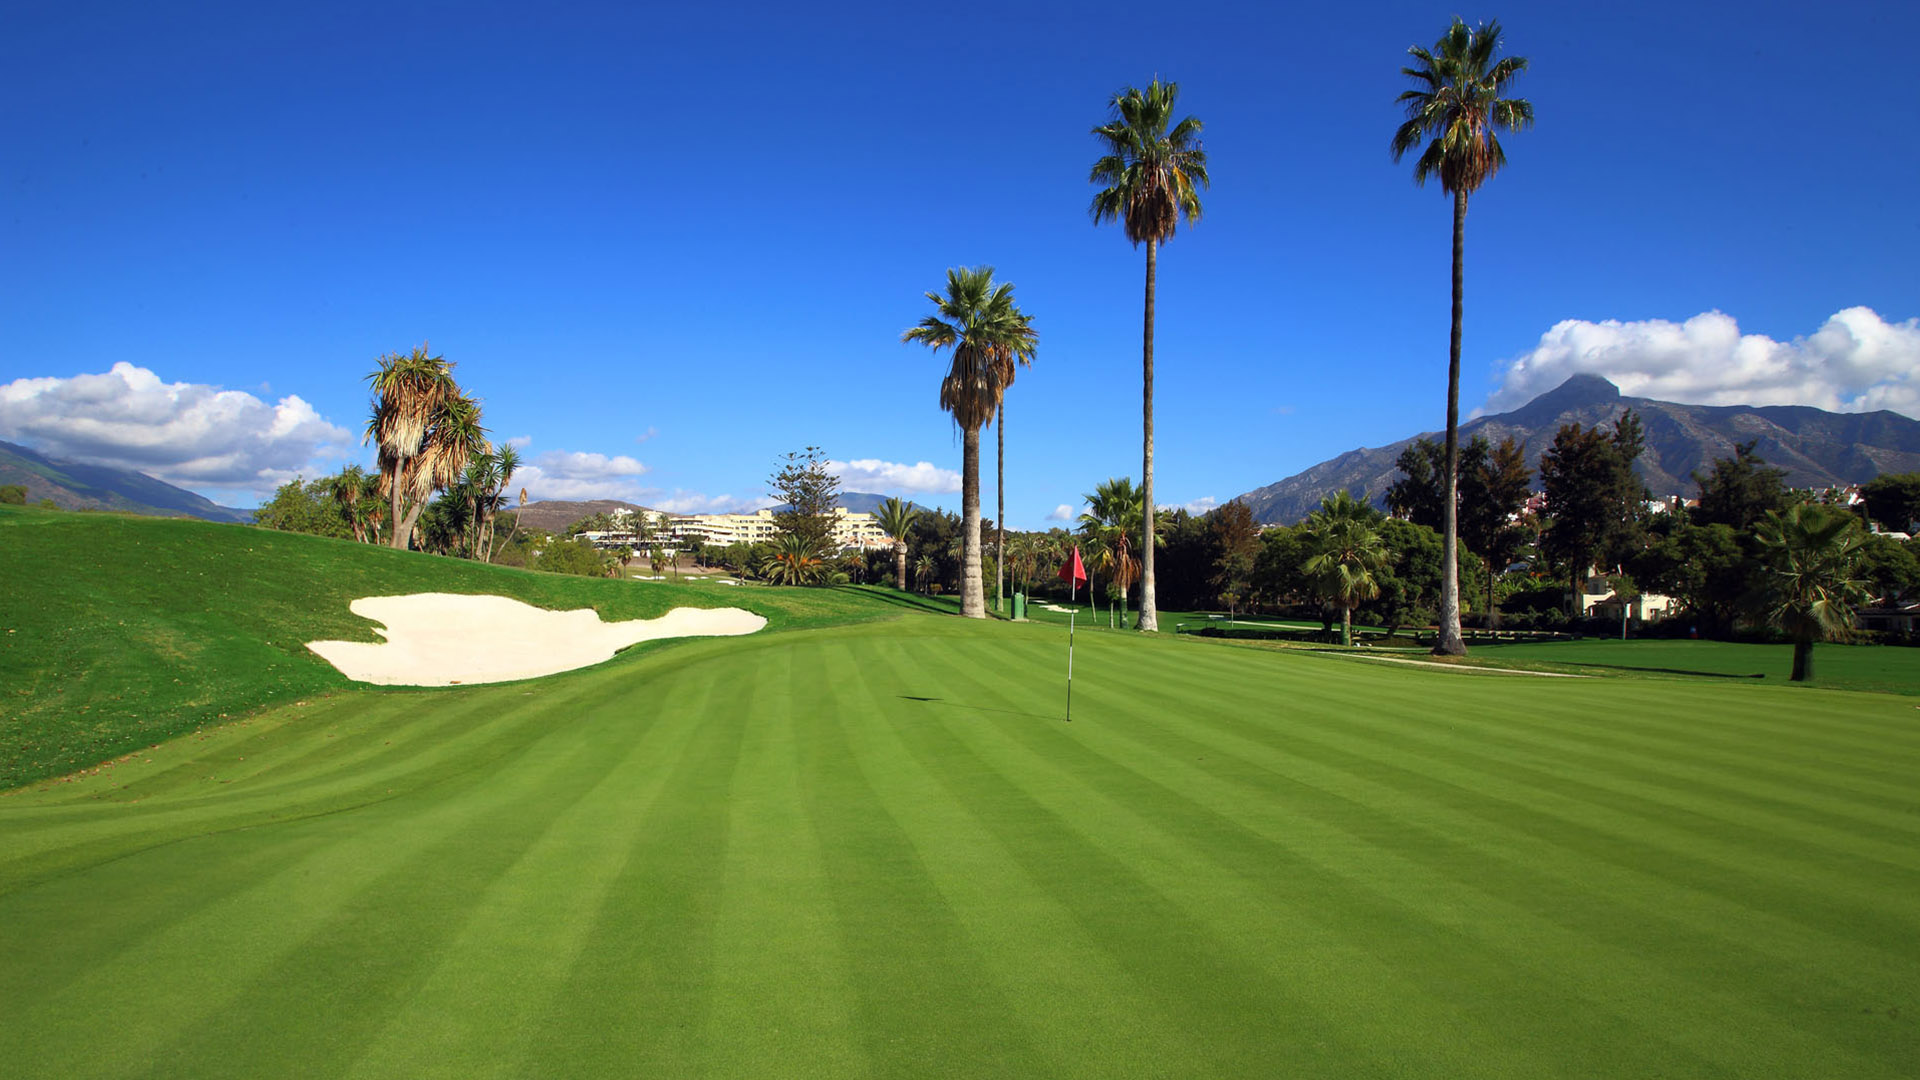 El Real Club de Golf Las Brisas, será la sede del Open de España Femenino en 2023